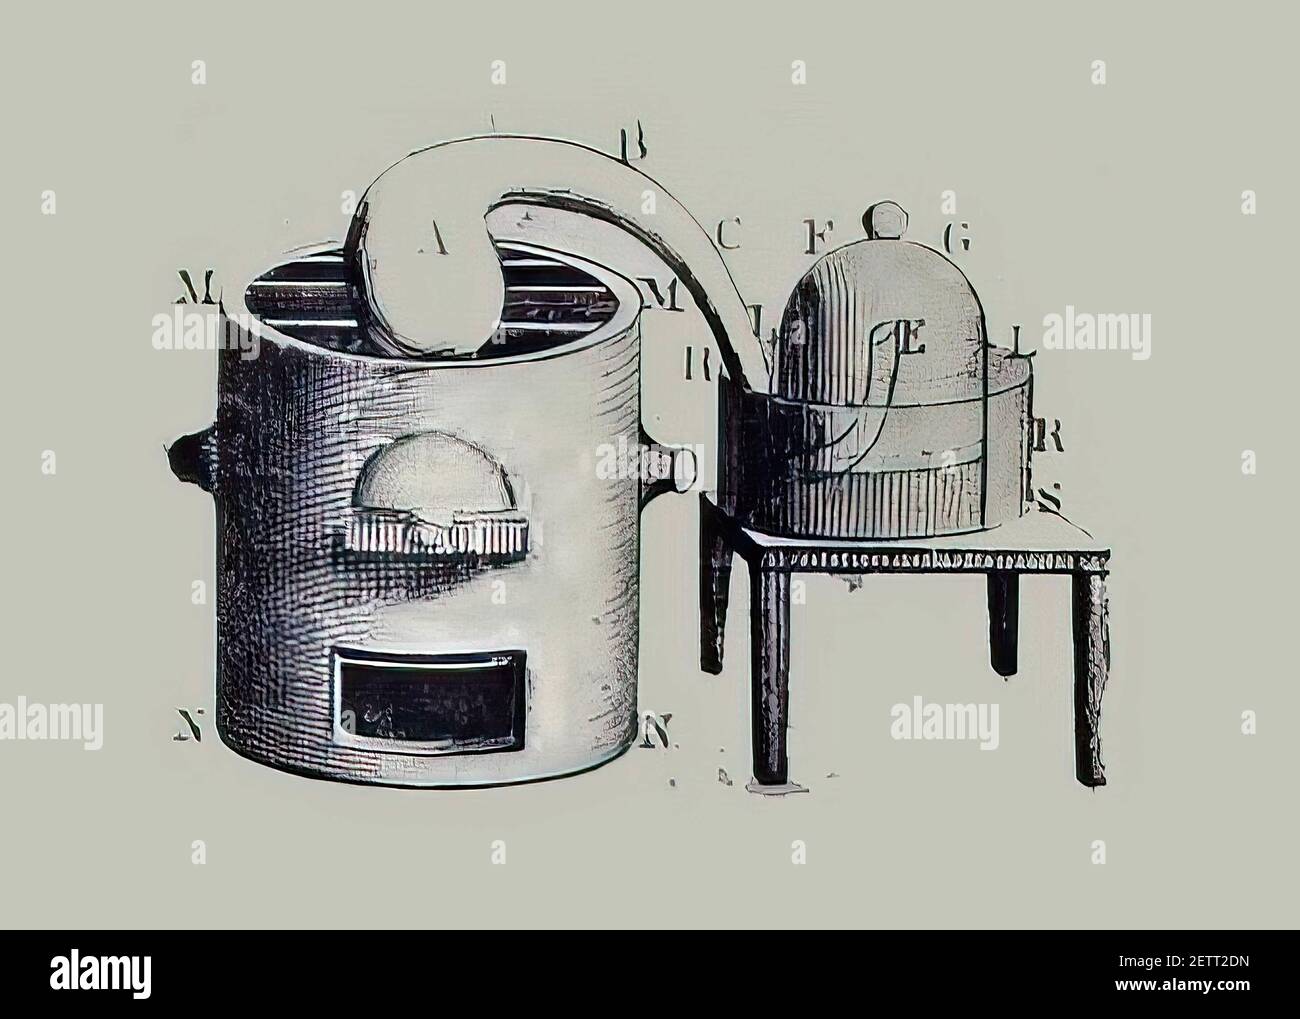 Une illustration d'outils alchimiques du XIXe siècle Banque D'Images